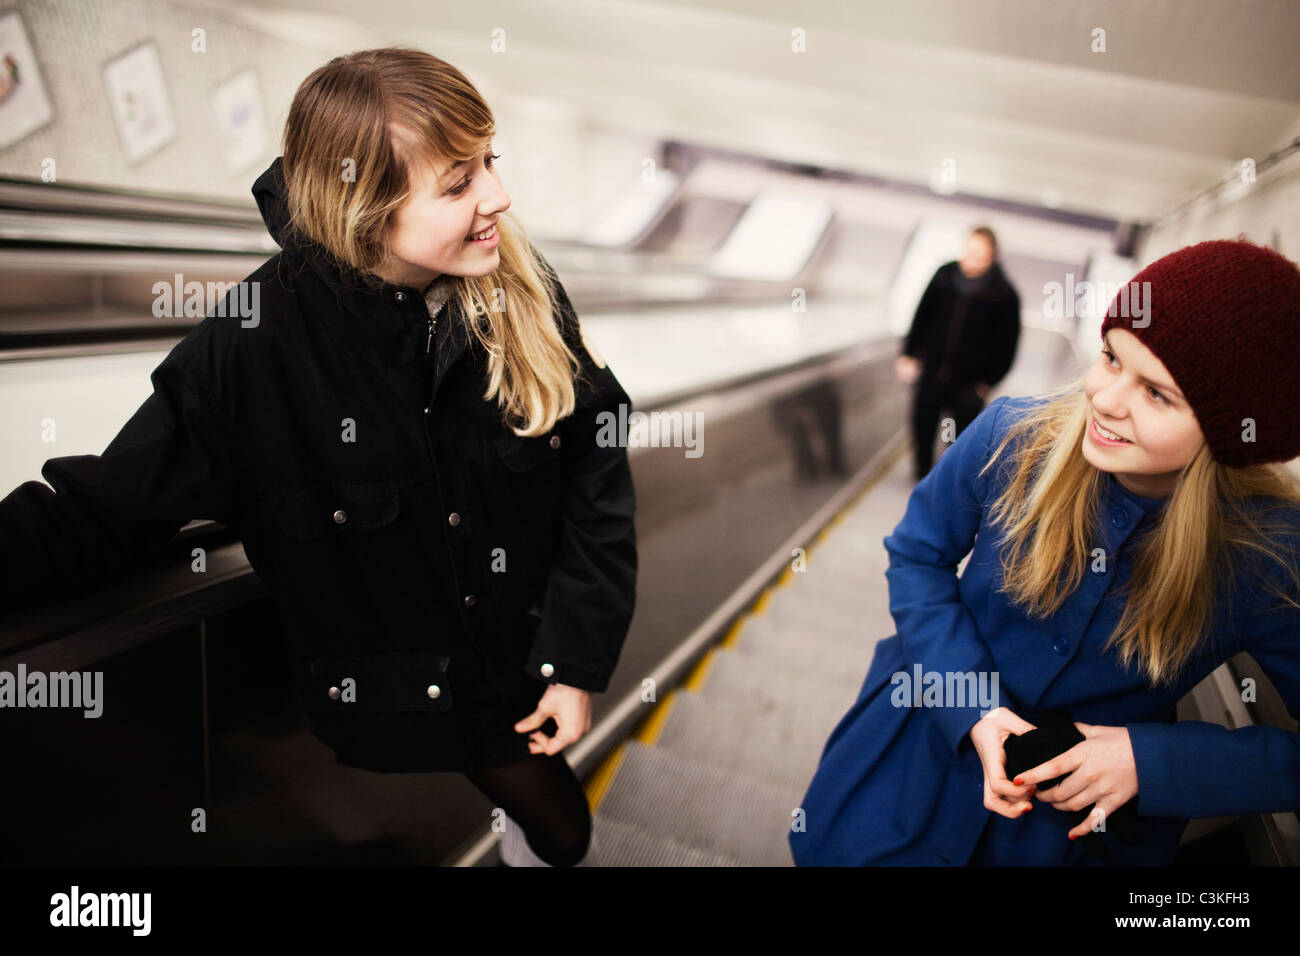 Two teenage girls (14-15) on escalator Stock Photo